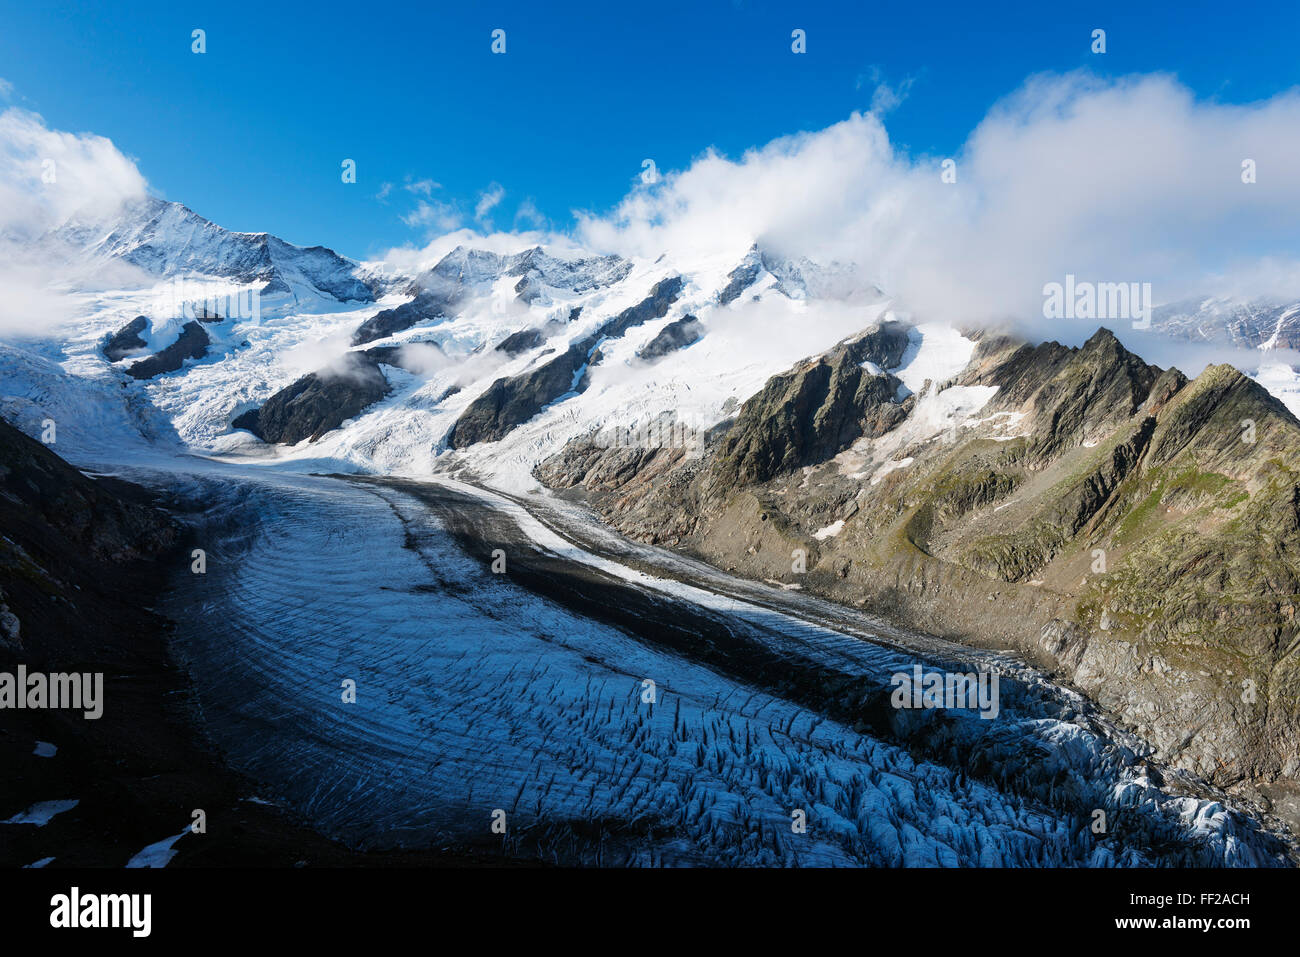 Gletscher glacier above Grindelwald, Interlaken, Bernese Oberland, Switzerland, Europe Stock Photo